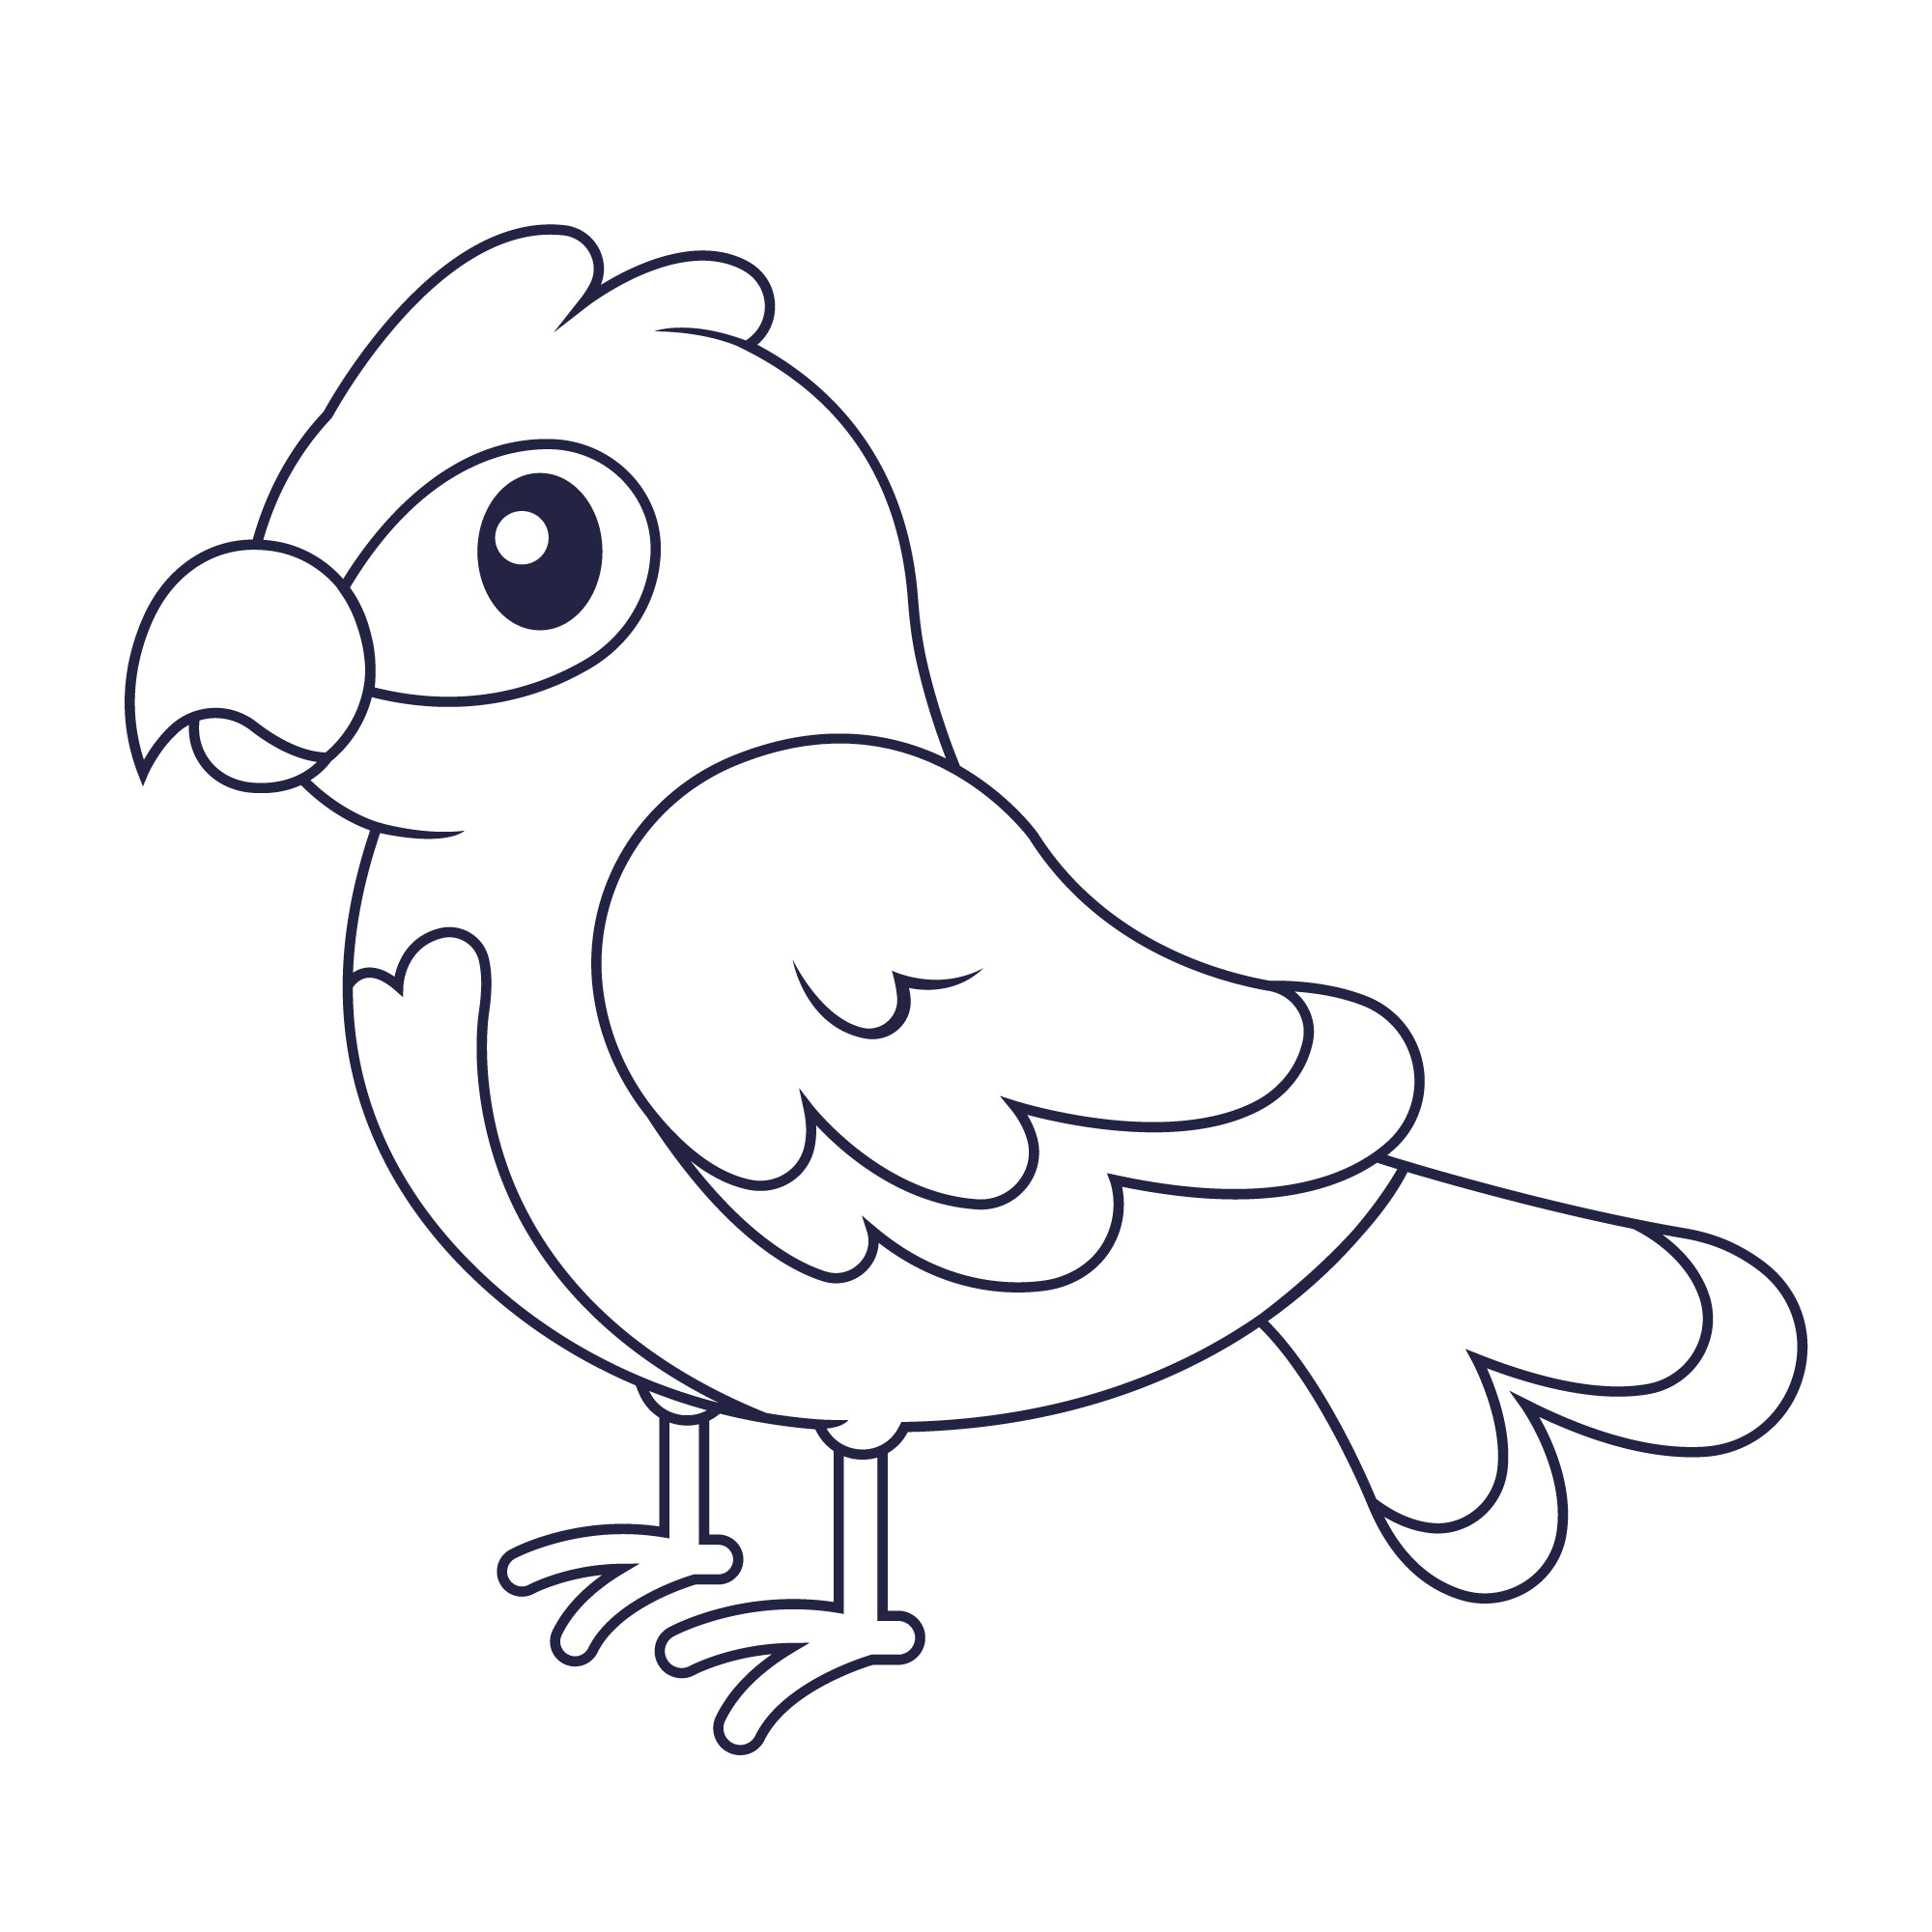 Раскраска для детей: сказочная птица с маленьким клювом